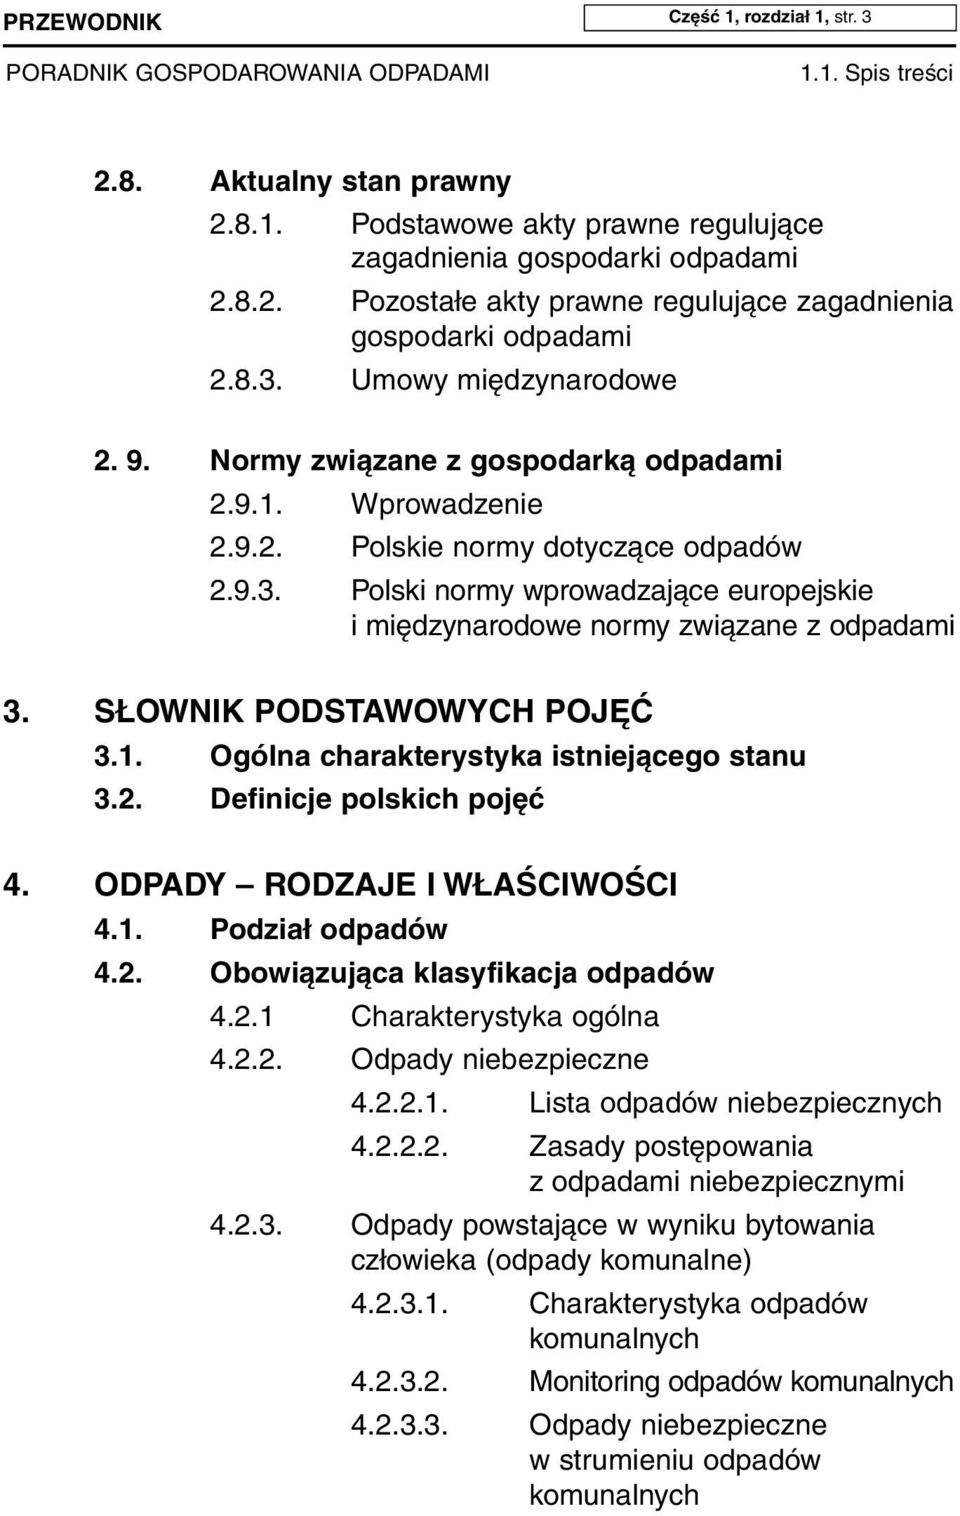 SŁOWNIK PODSTAWOWYCH POJĘĆ 3.1. Ogólna charakterystyka istniejącego stanu 3.2. Definicje polskich pojęć 4. ODPADY RODZAJE I WŁAŚCIWOŚCI 4.1. Podział odpadów 4.2. Obowiązująca klasyfikacja odpadów 4.2.1 Charakterystyka ogólna 4.